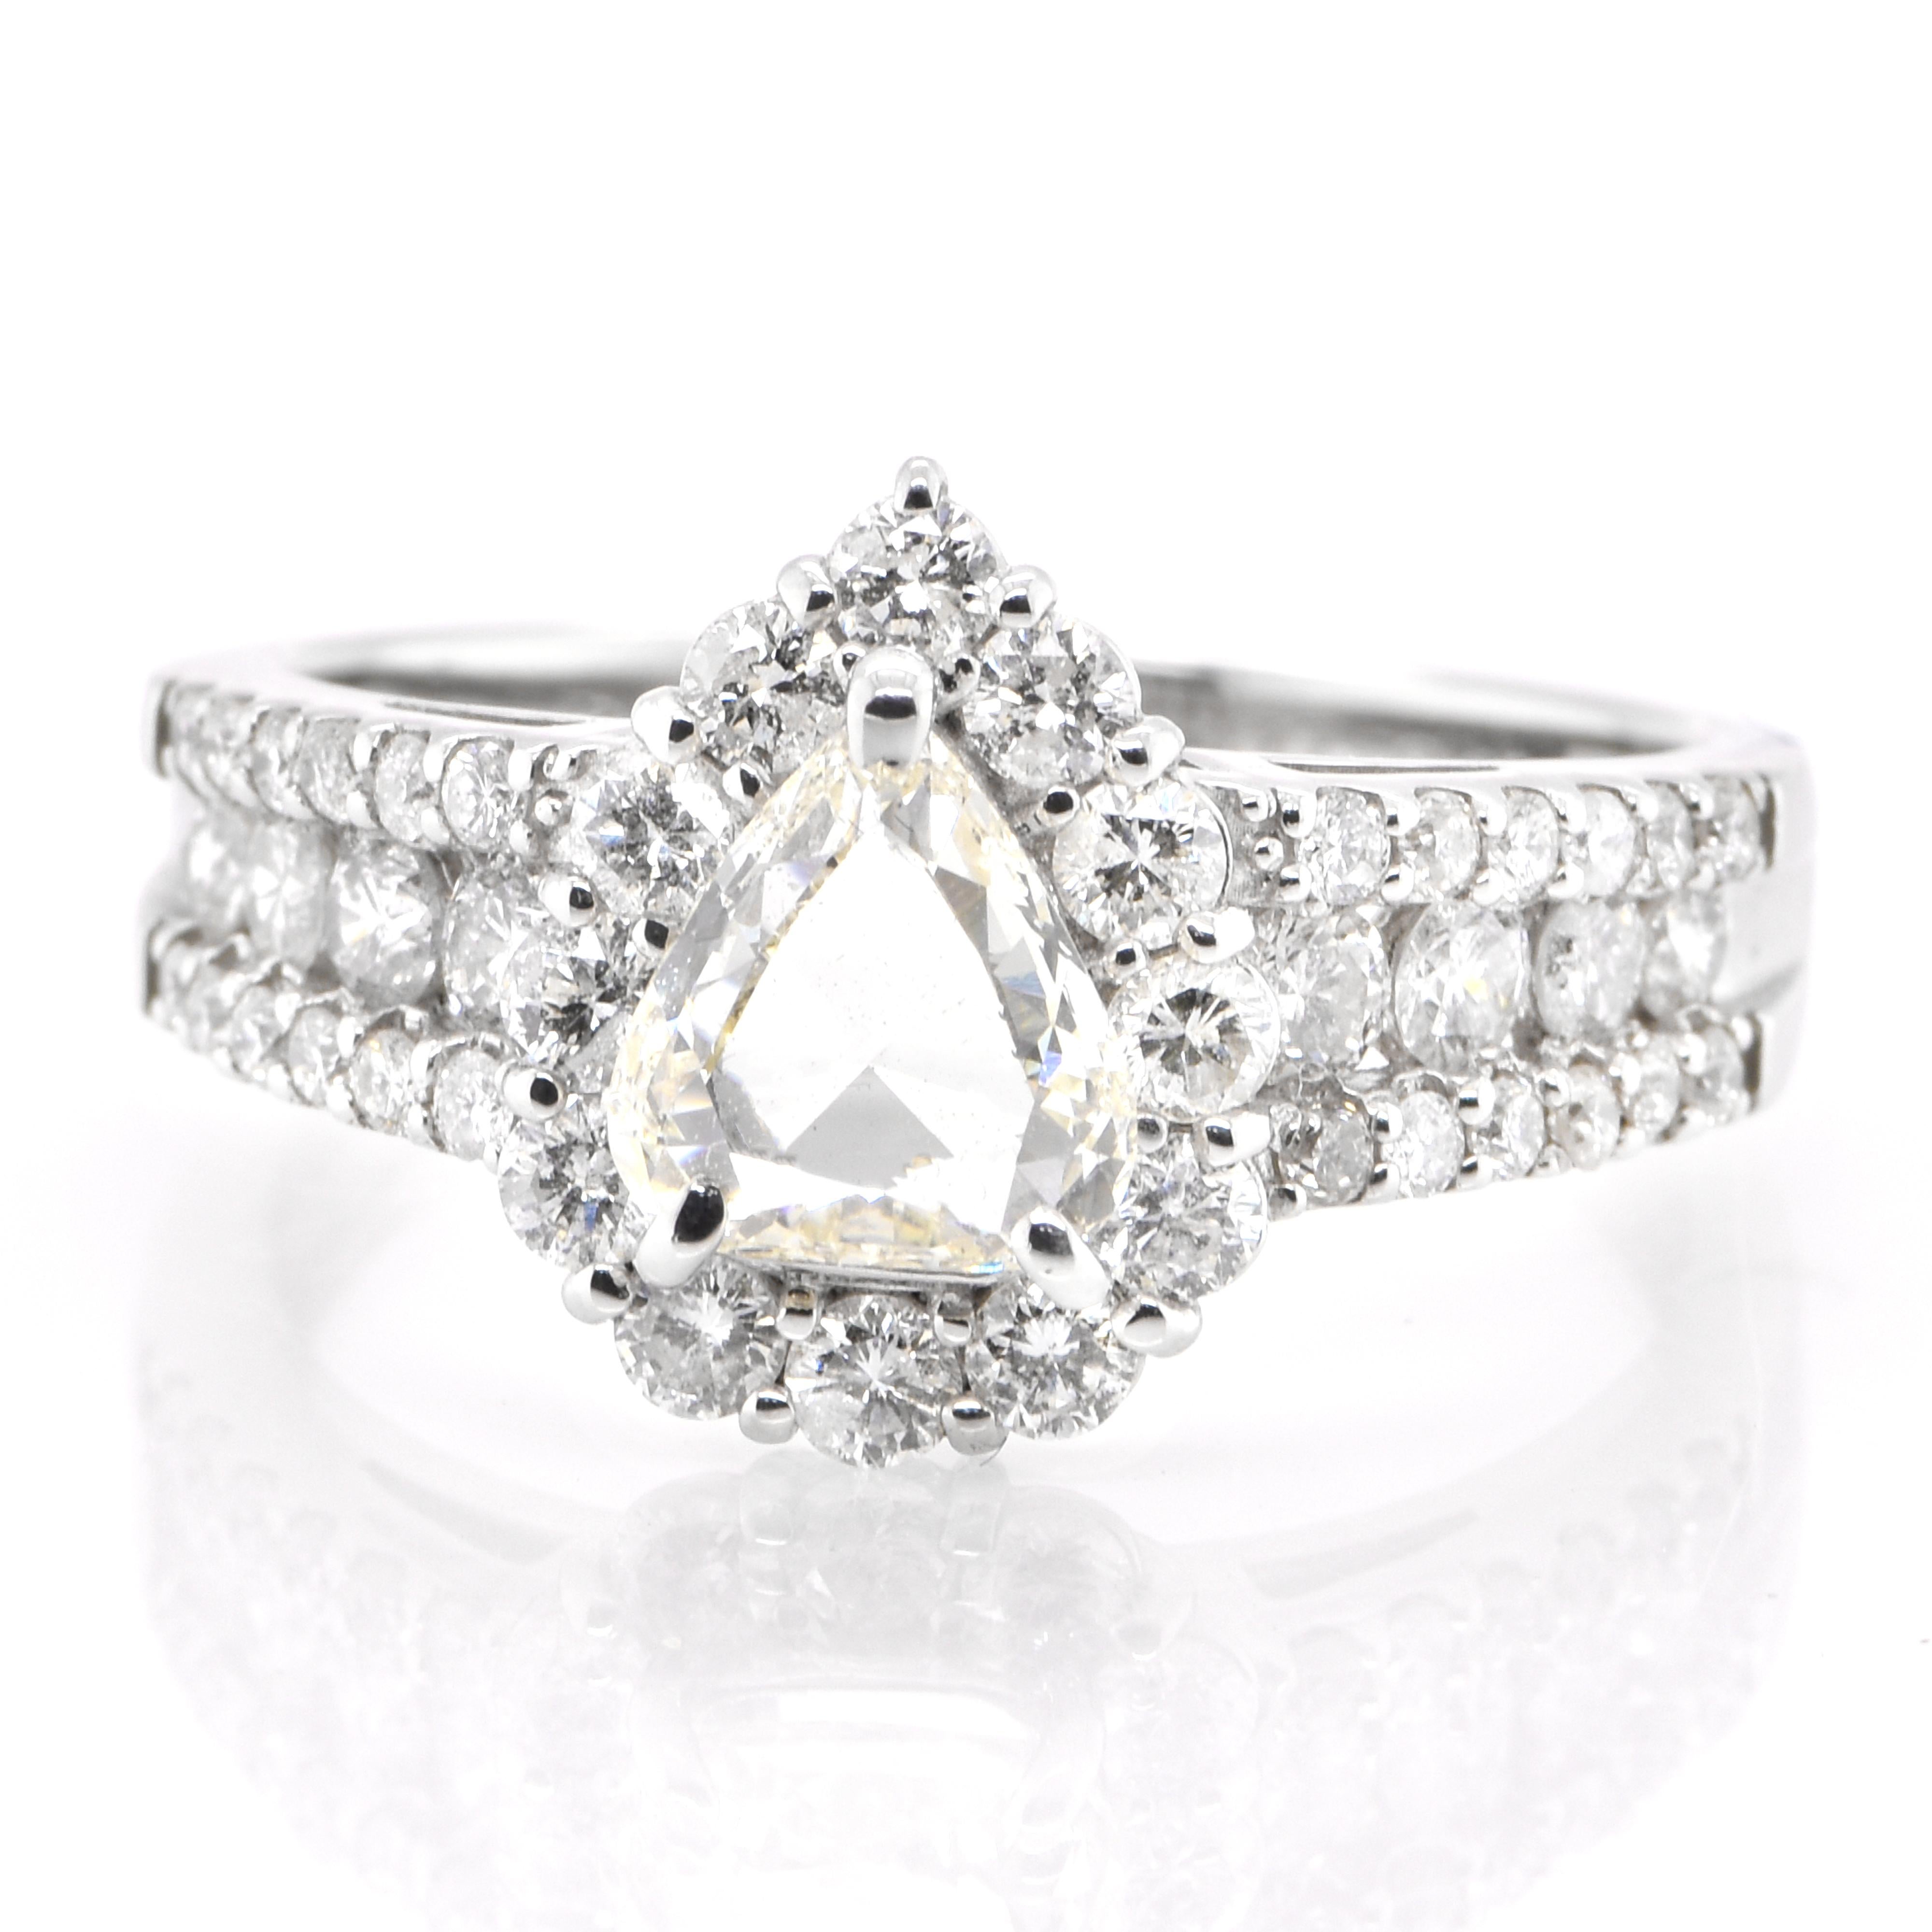 Eine schöne Halo-Ring mit einem 0,77 Karat Natural Rose Cut Diamond und 0,90 Karat Diamant Akzente Ring in Platin gesetzt. Diamanten werden seit Tausenden von Jahren in der Geschichte der Menschheit als Schmuck und Wertgegenstand geschätzt. Sie